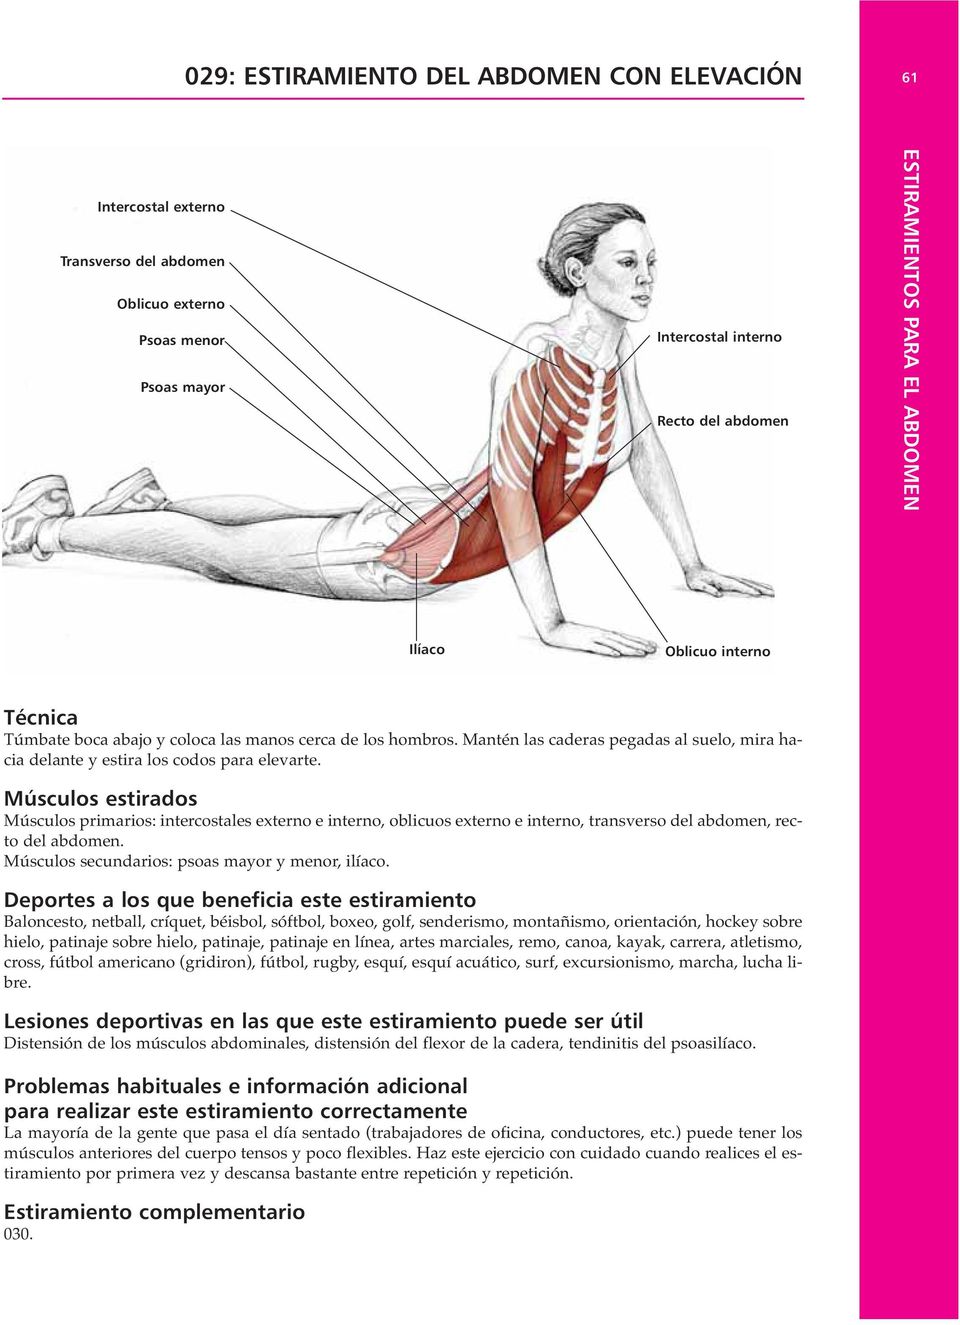 Músculos estirados Músculos primarios: intercostales externo e interno, oblicuos externo e interno, transverso del abdomen, recto del abdomen. Músculos secundarios: psoas mayor y menor, ilíaco.